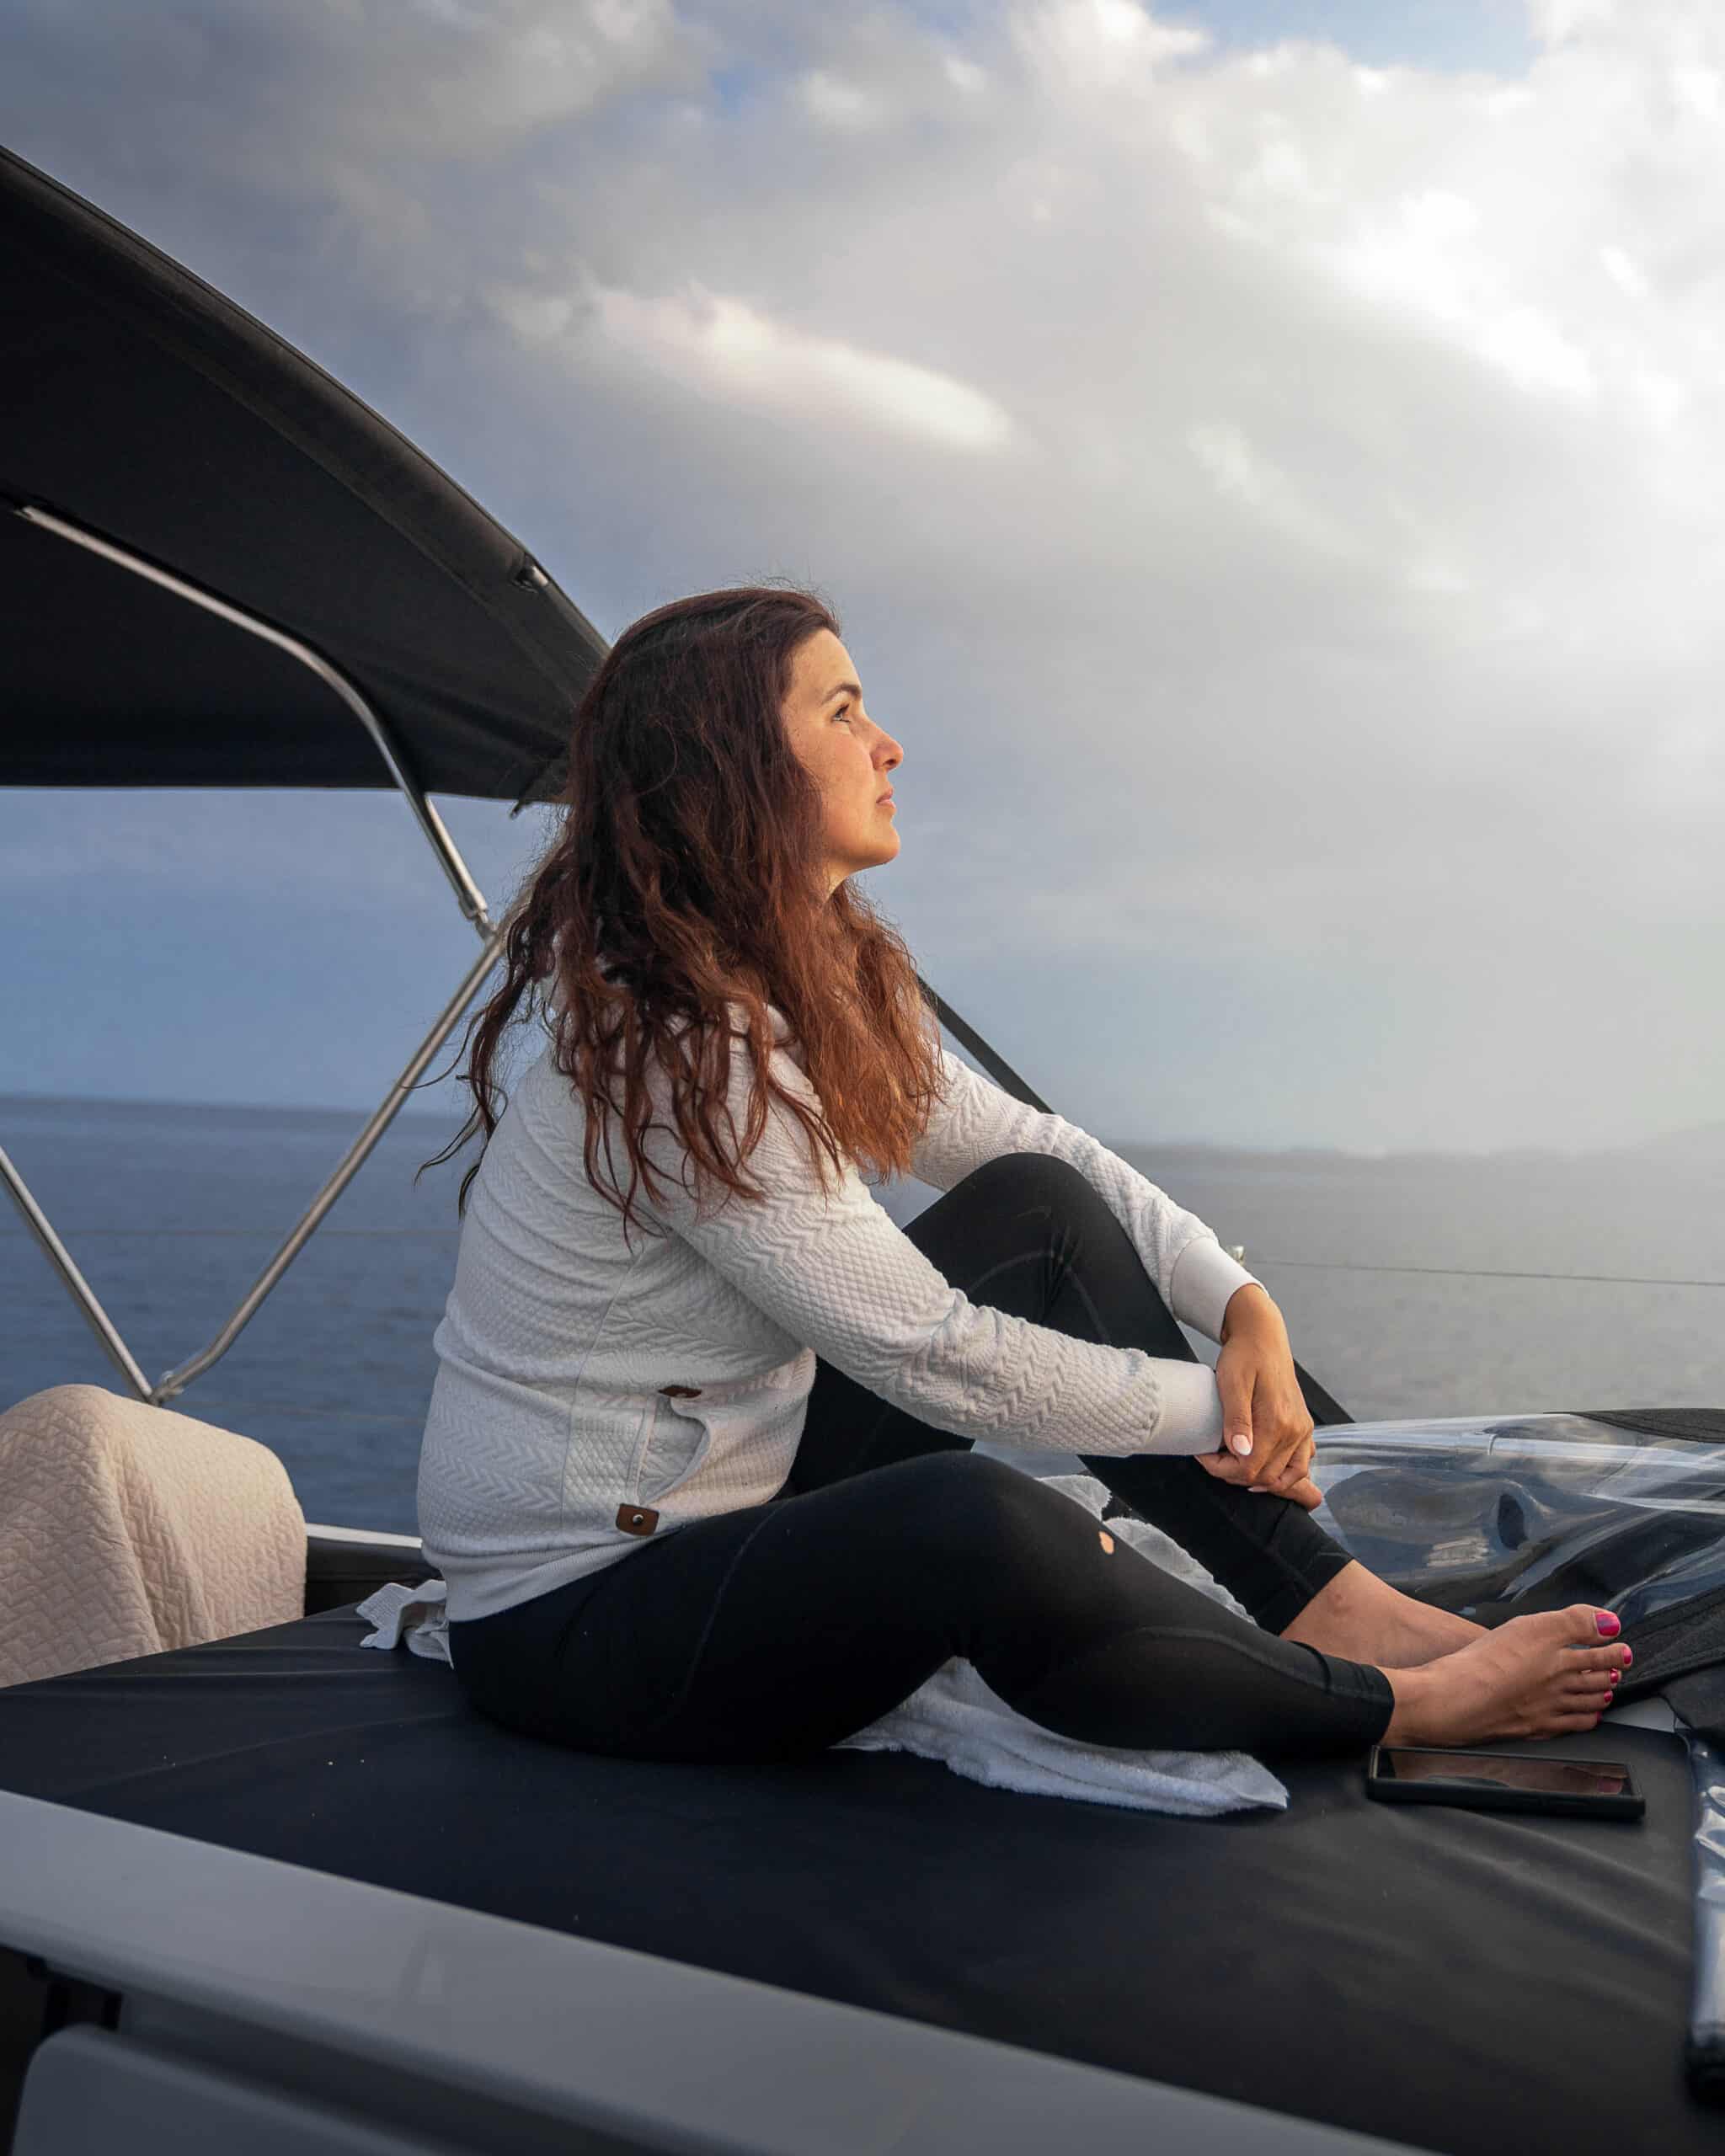 Eine Frau sitzt auf dem Deck eines Bootes und betrachtet schweigend den Himmel, während sie ihr Segelabenteuer genießt. Sie hat langes, welliges Haar und trägt einen weißen Pullover und eine schwarze Hose. Im Hintergrund sind das Meer und ein bewölkter Himmel zu sehen.